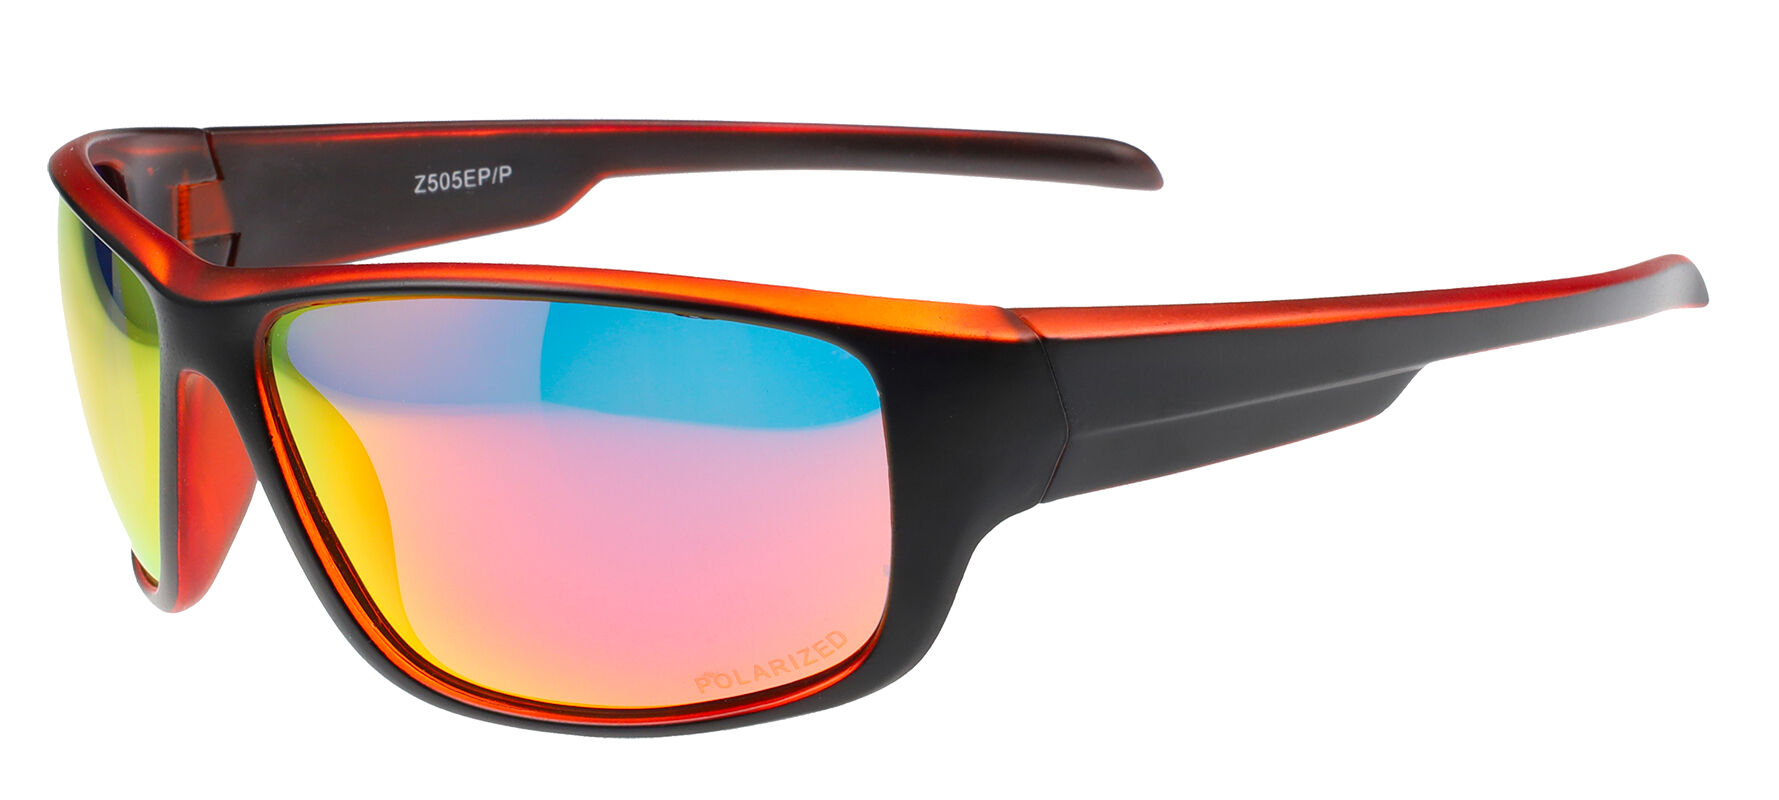 Sluneční brýle polarizační Sport/Z505EP/P